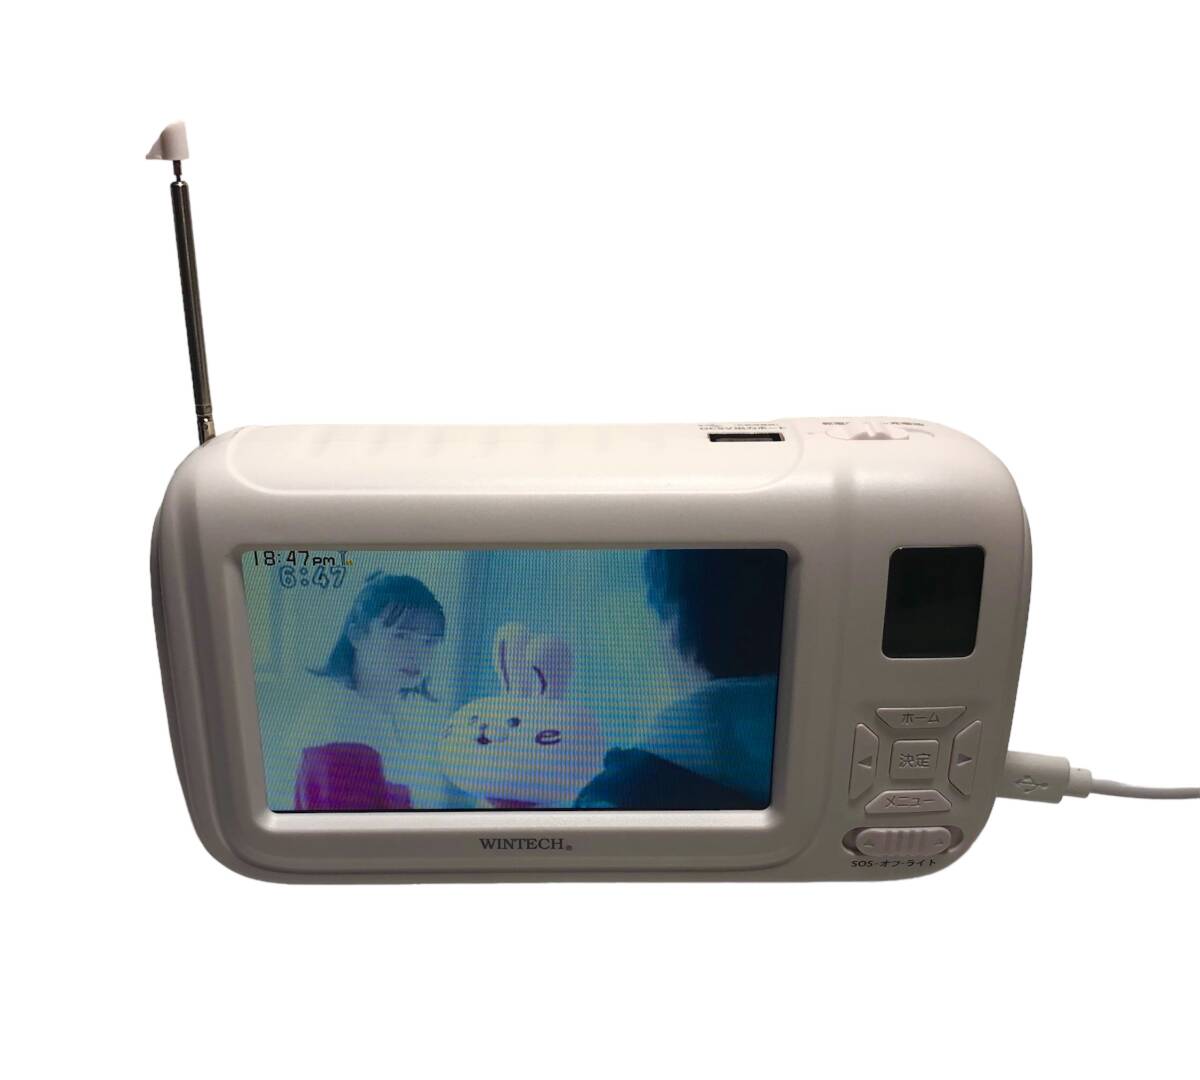 WINTECH ウィンテック TVR-L38R 4.3インチ 液晶 ワンセグ テレビ ラジオ 手回し充電機能 USB充電 乾電池電源 録画機能搭載 非常用 緊急用_画像2